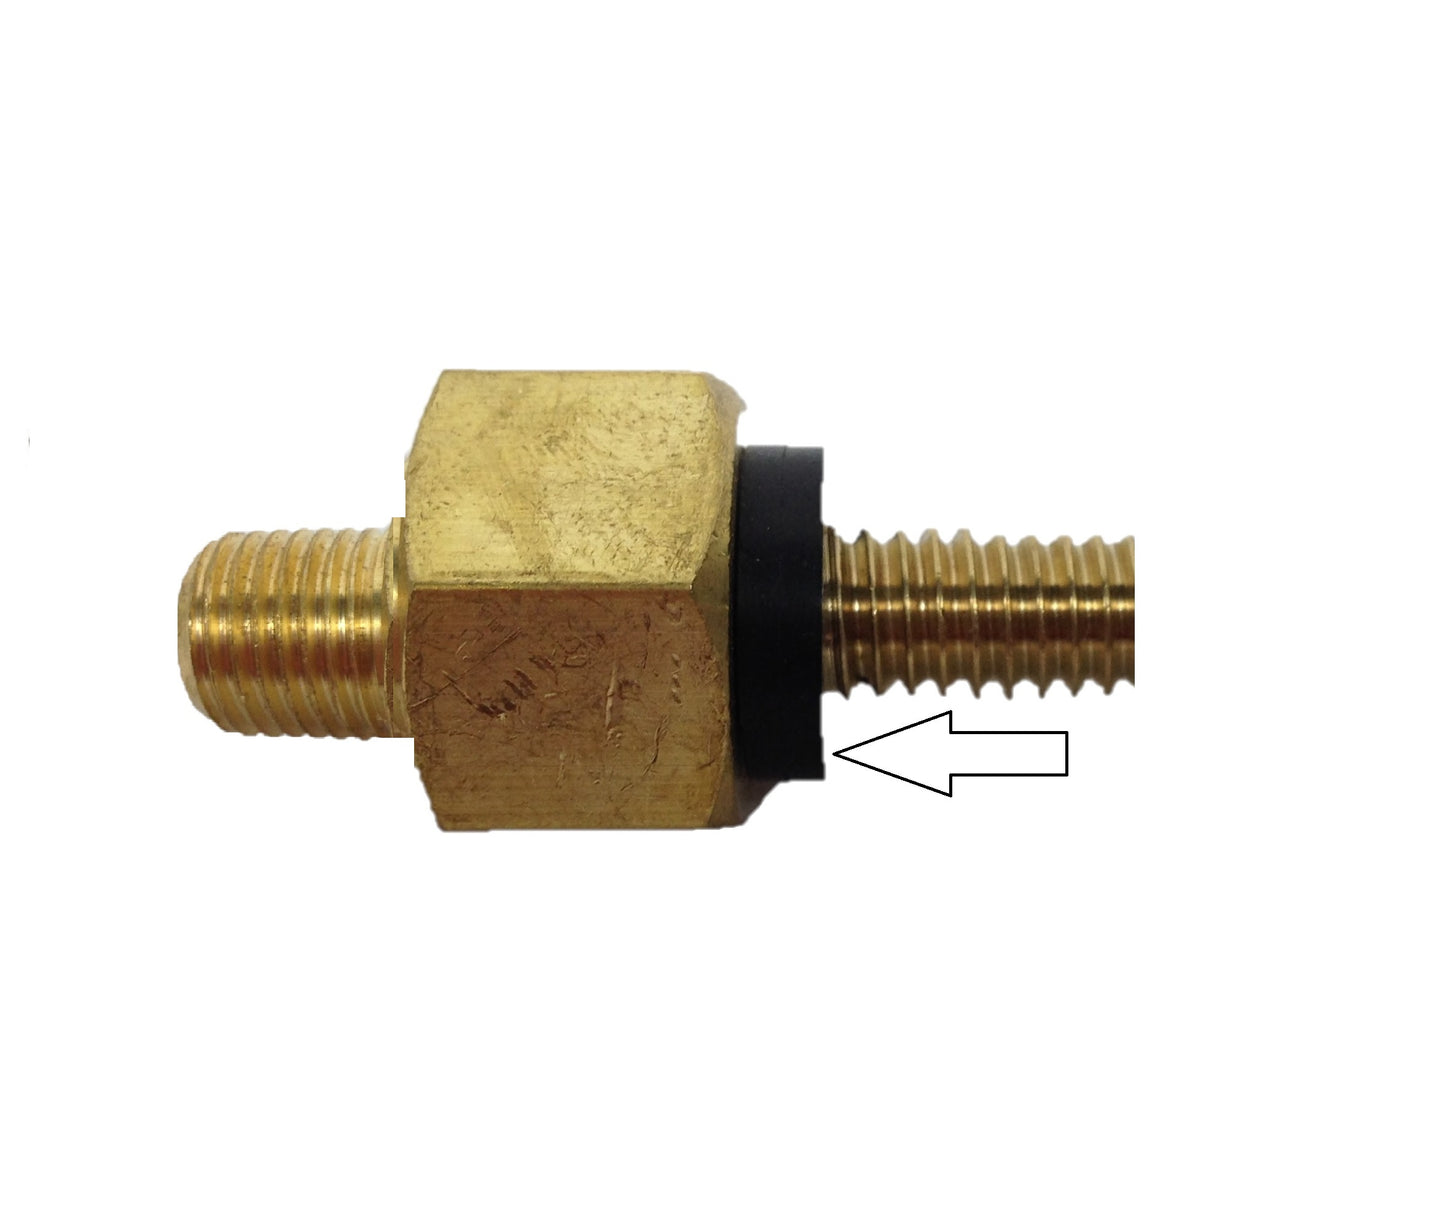 Replacement Plumbing Gasket/O-ring